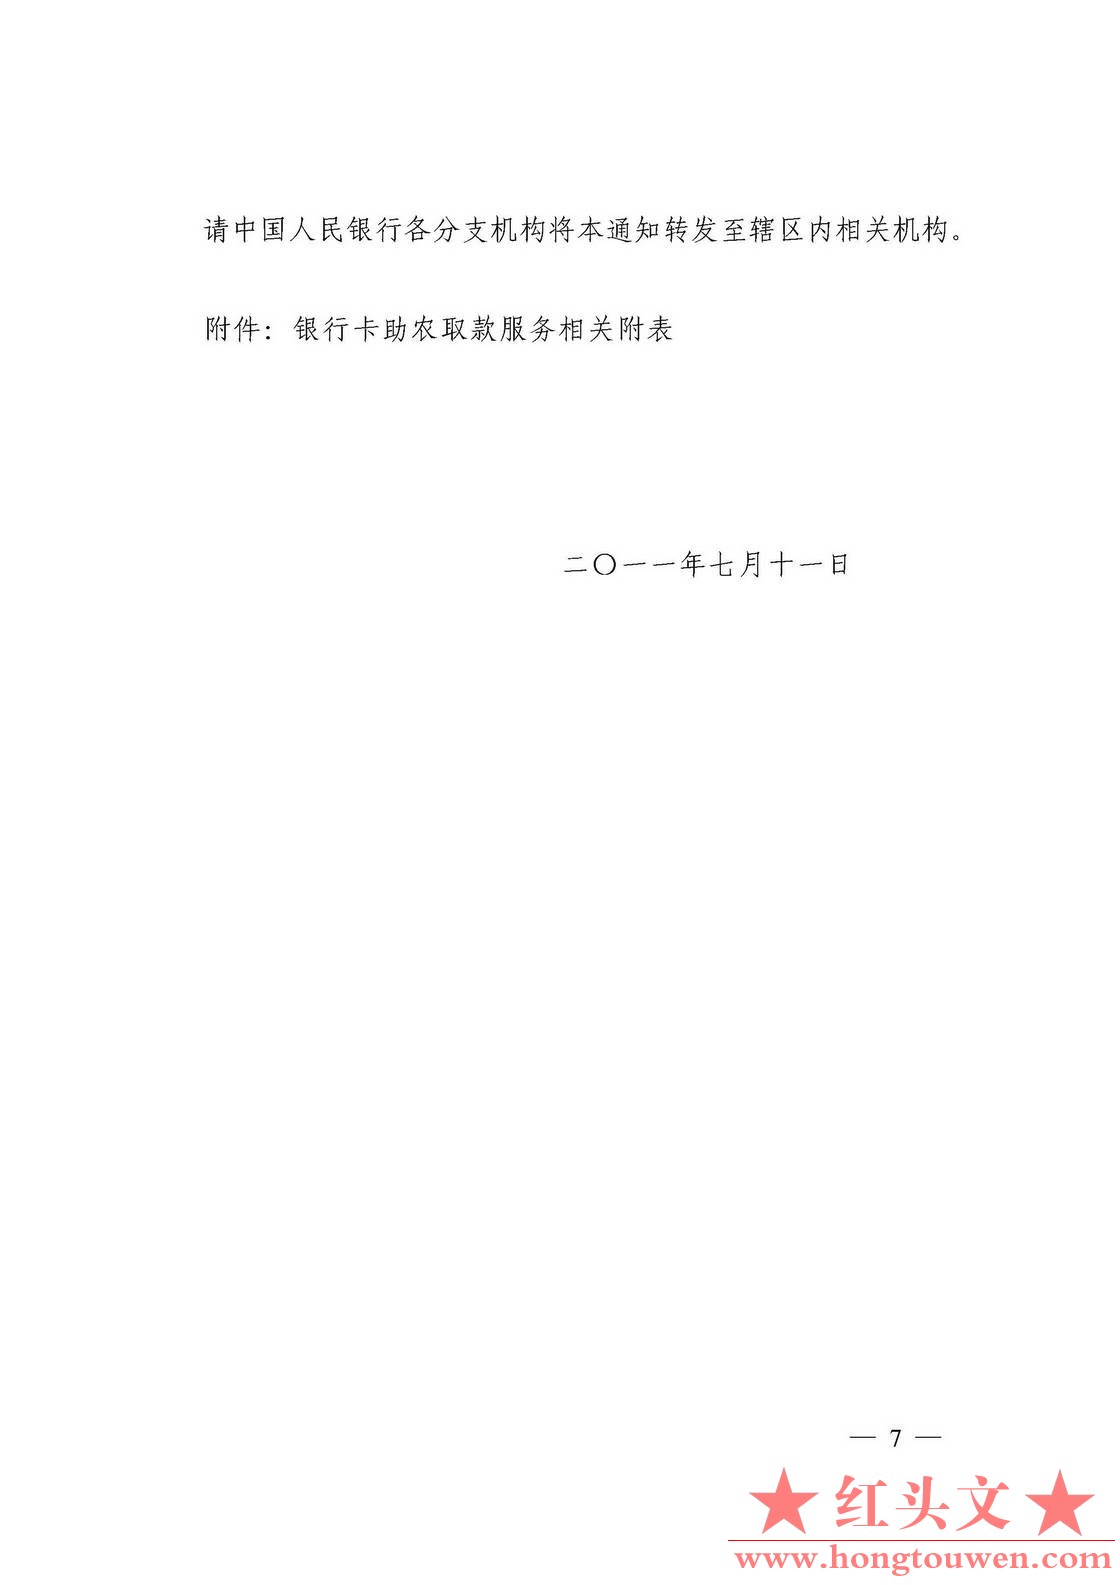 银发[2011]177号-中国人民银行关于推广银行卡助农取款服务的通知_页面_07.jpg.jpg